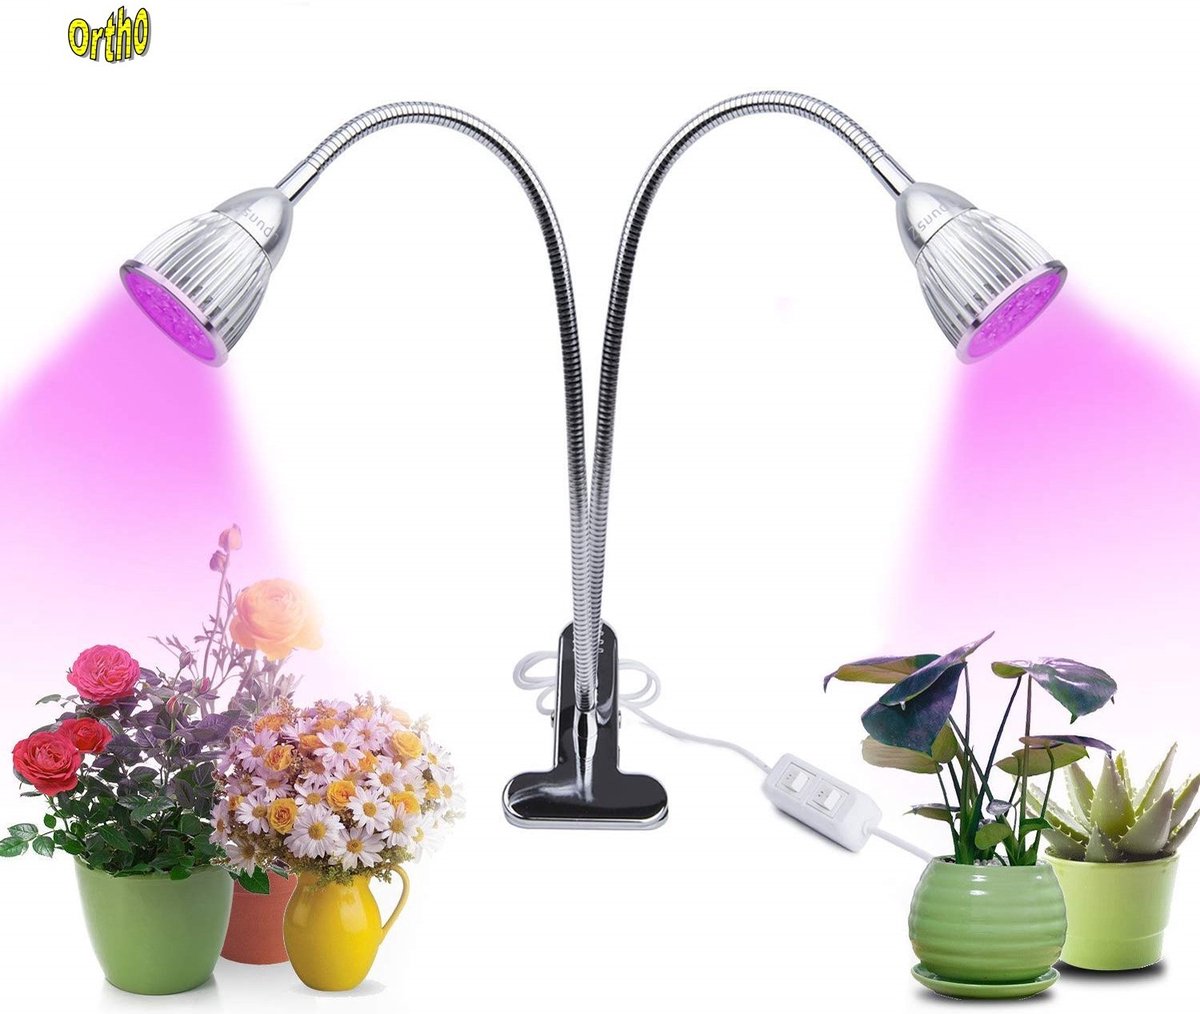 Ortho® - LED Groeilamp - Bloeilamp - Kweeklamp - Full Spectrum - Grow light - Groei lamp (met 2 lampen) met Flexibele lamphouder -Klem spotje - Zilver 2x - Ortho